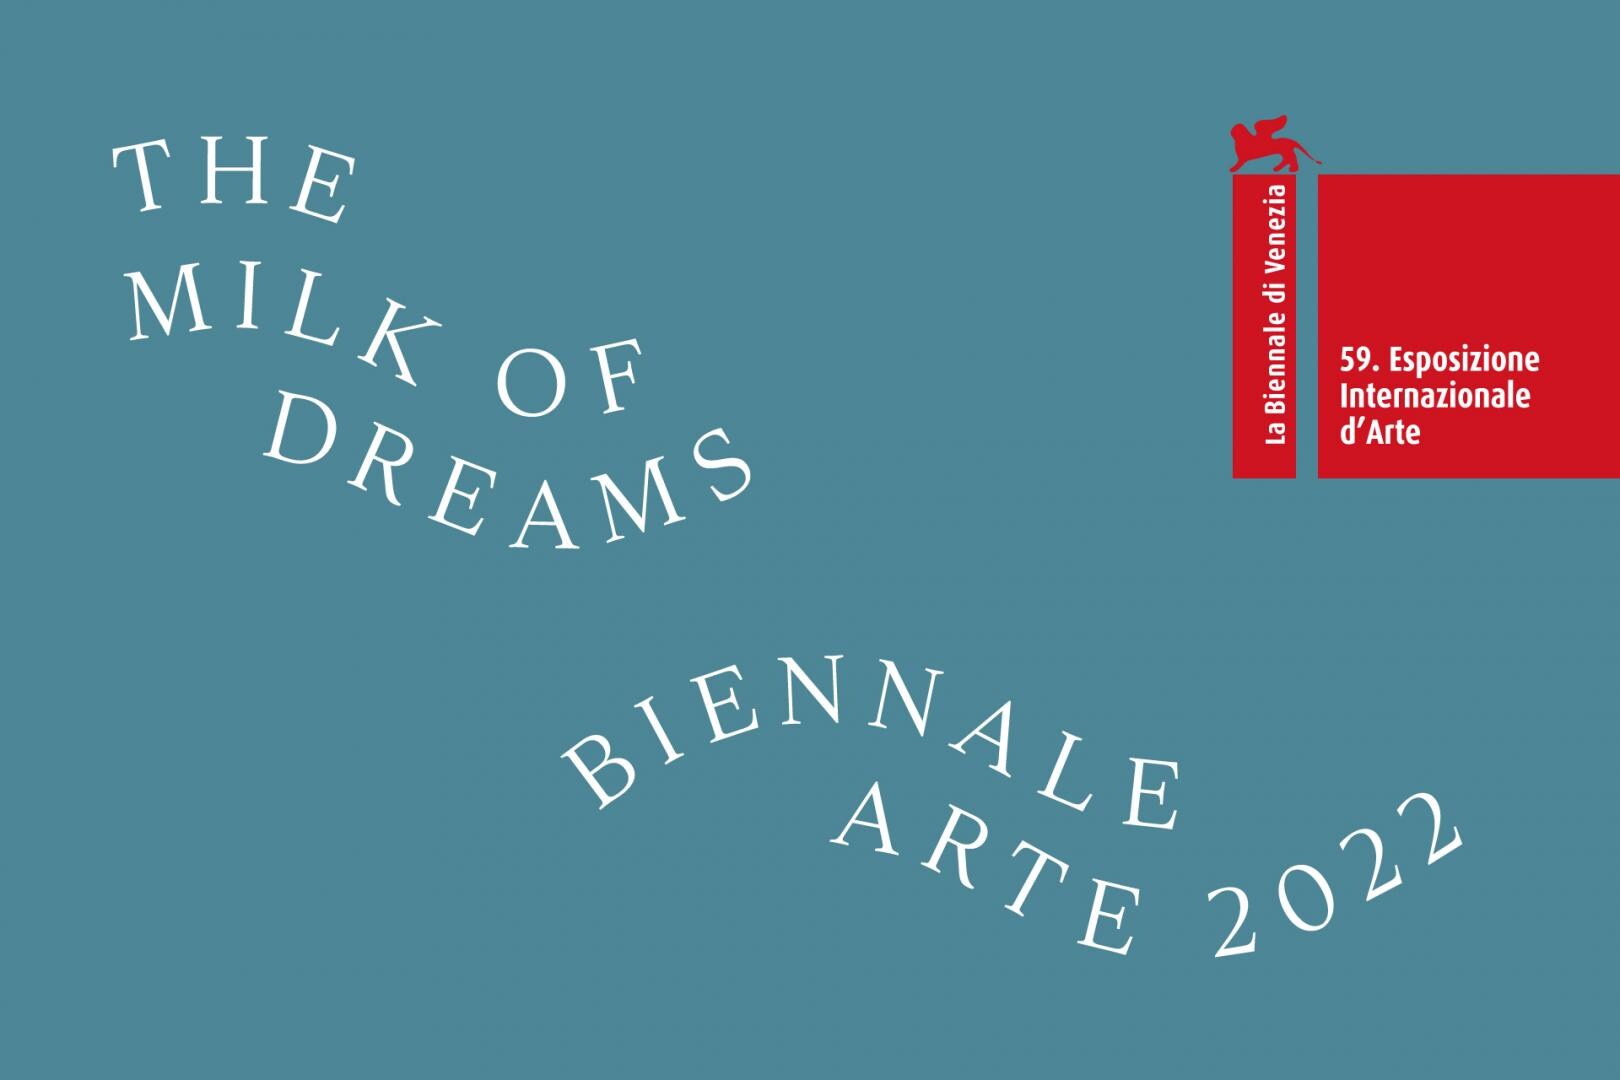 Visual Biennale Arte 2022